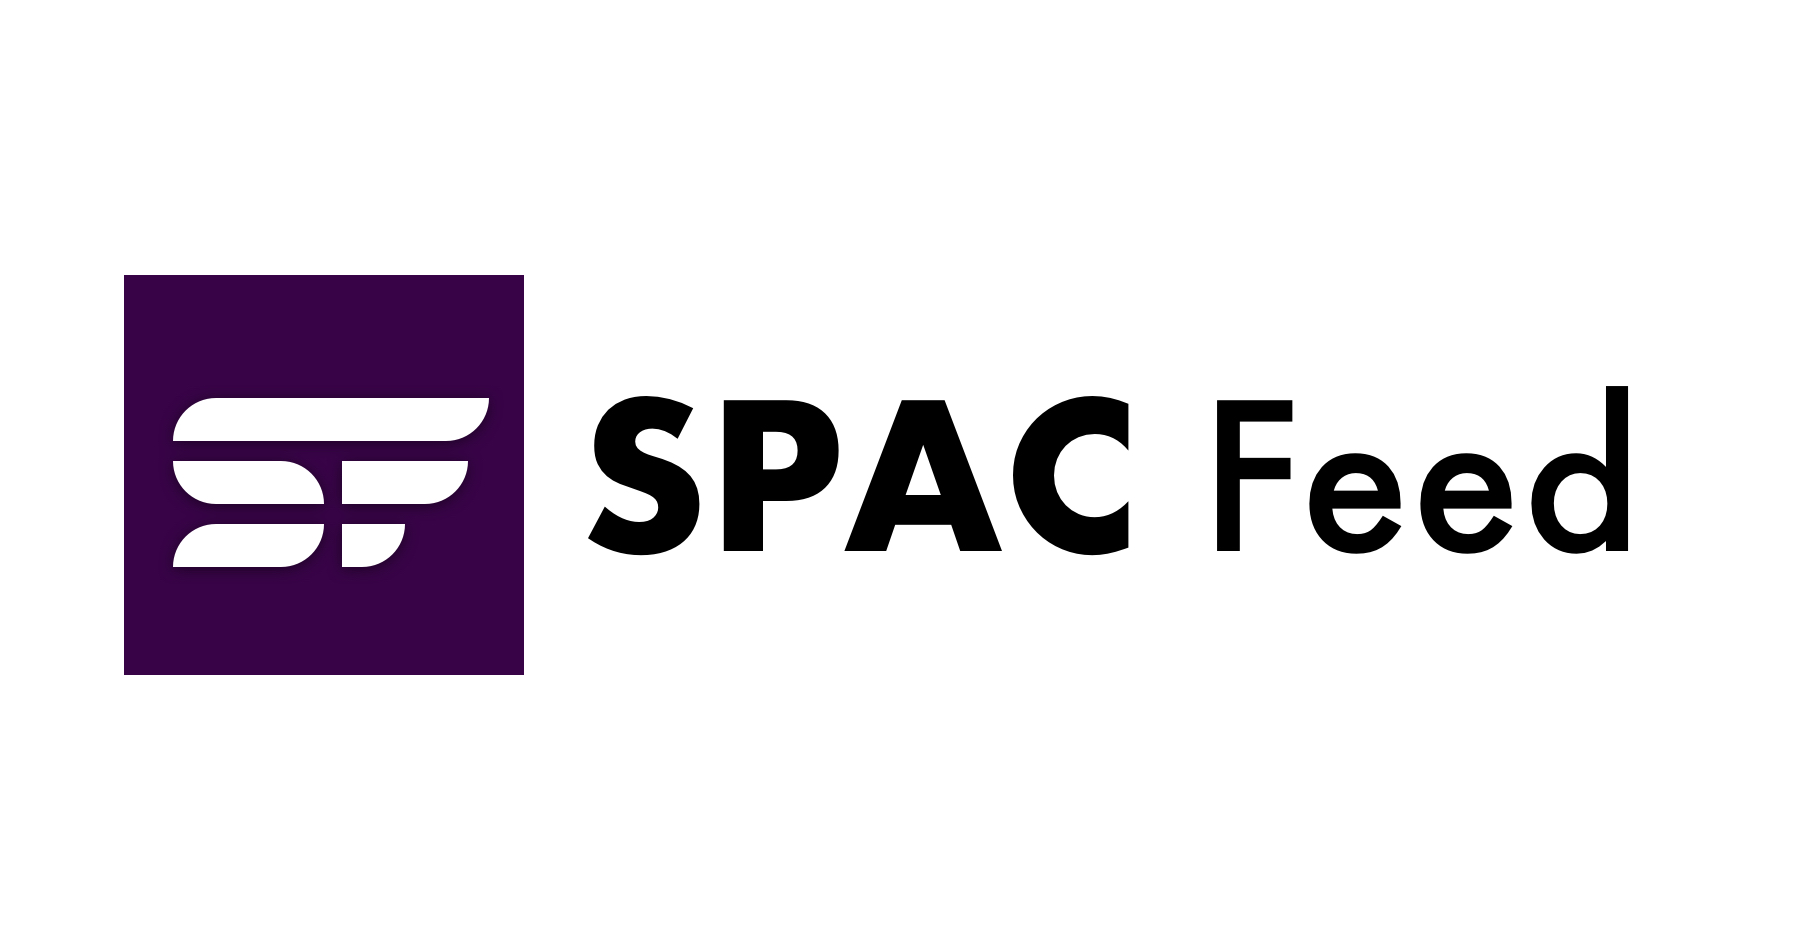 Η SEC εγκρίνει τελικούς κανόνες για την ενίσχυση των γνωστοποιήσεων και την παροχή πρόσθετης προστασίας των επενδυτών που σχετίζονται με τις SPAC | Τροφοδοσία SPAC